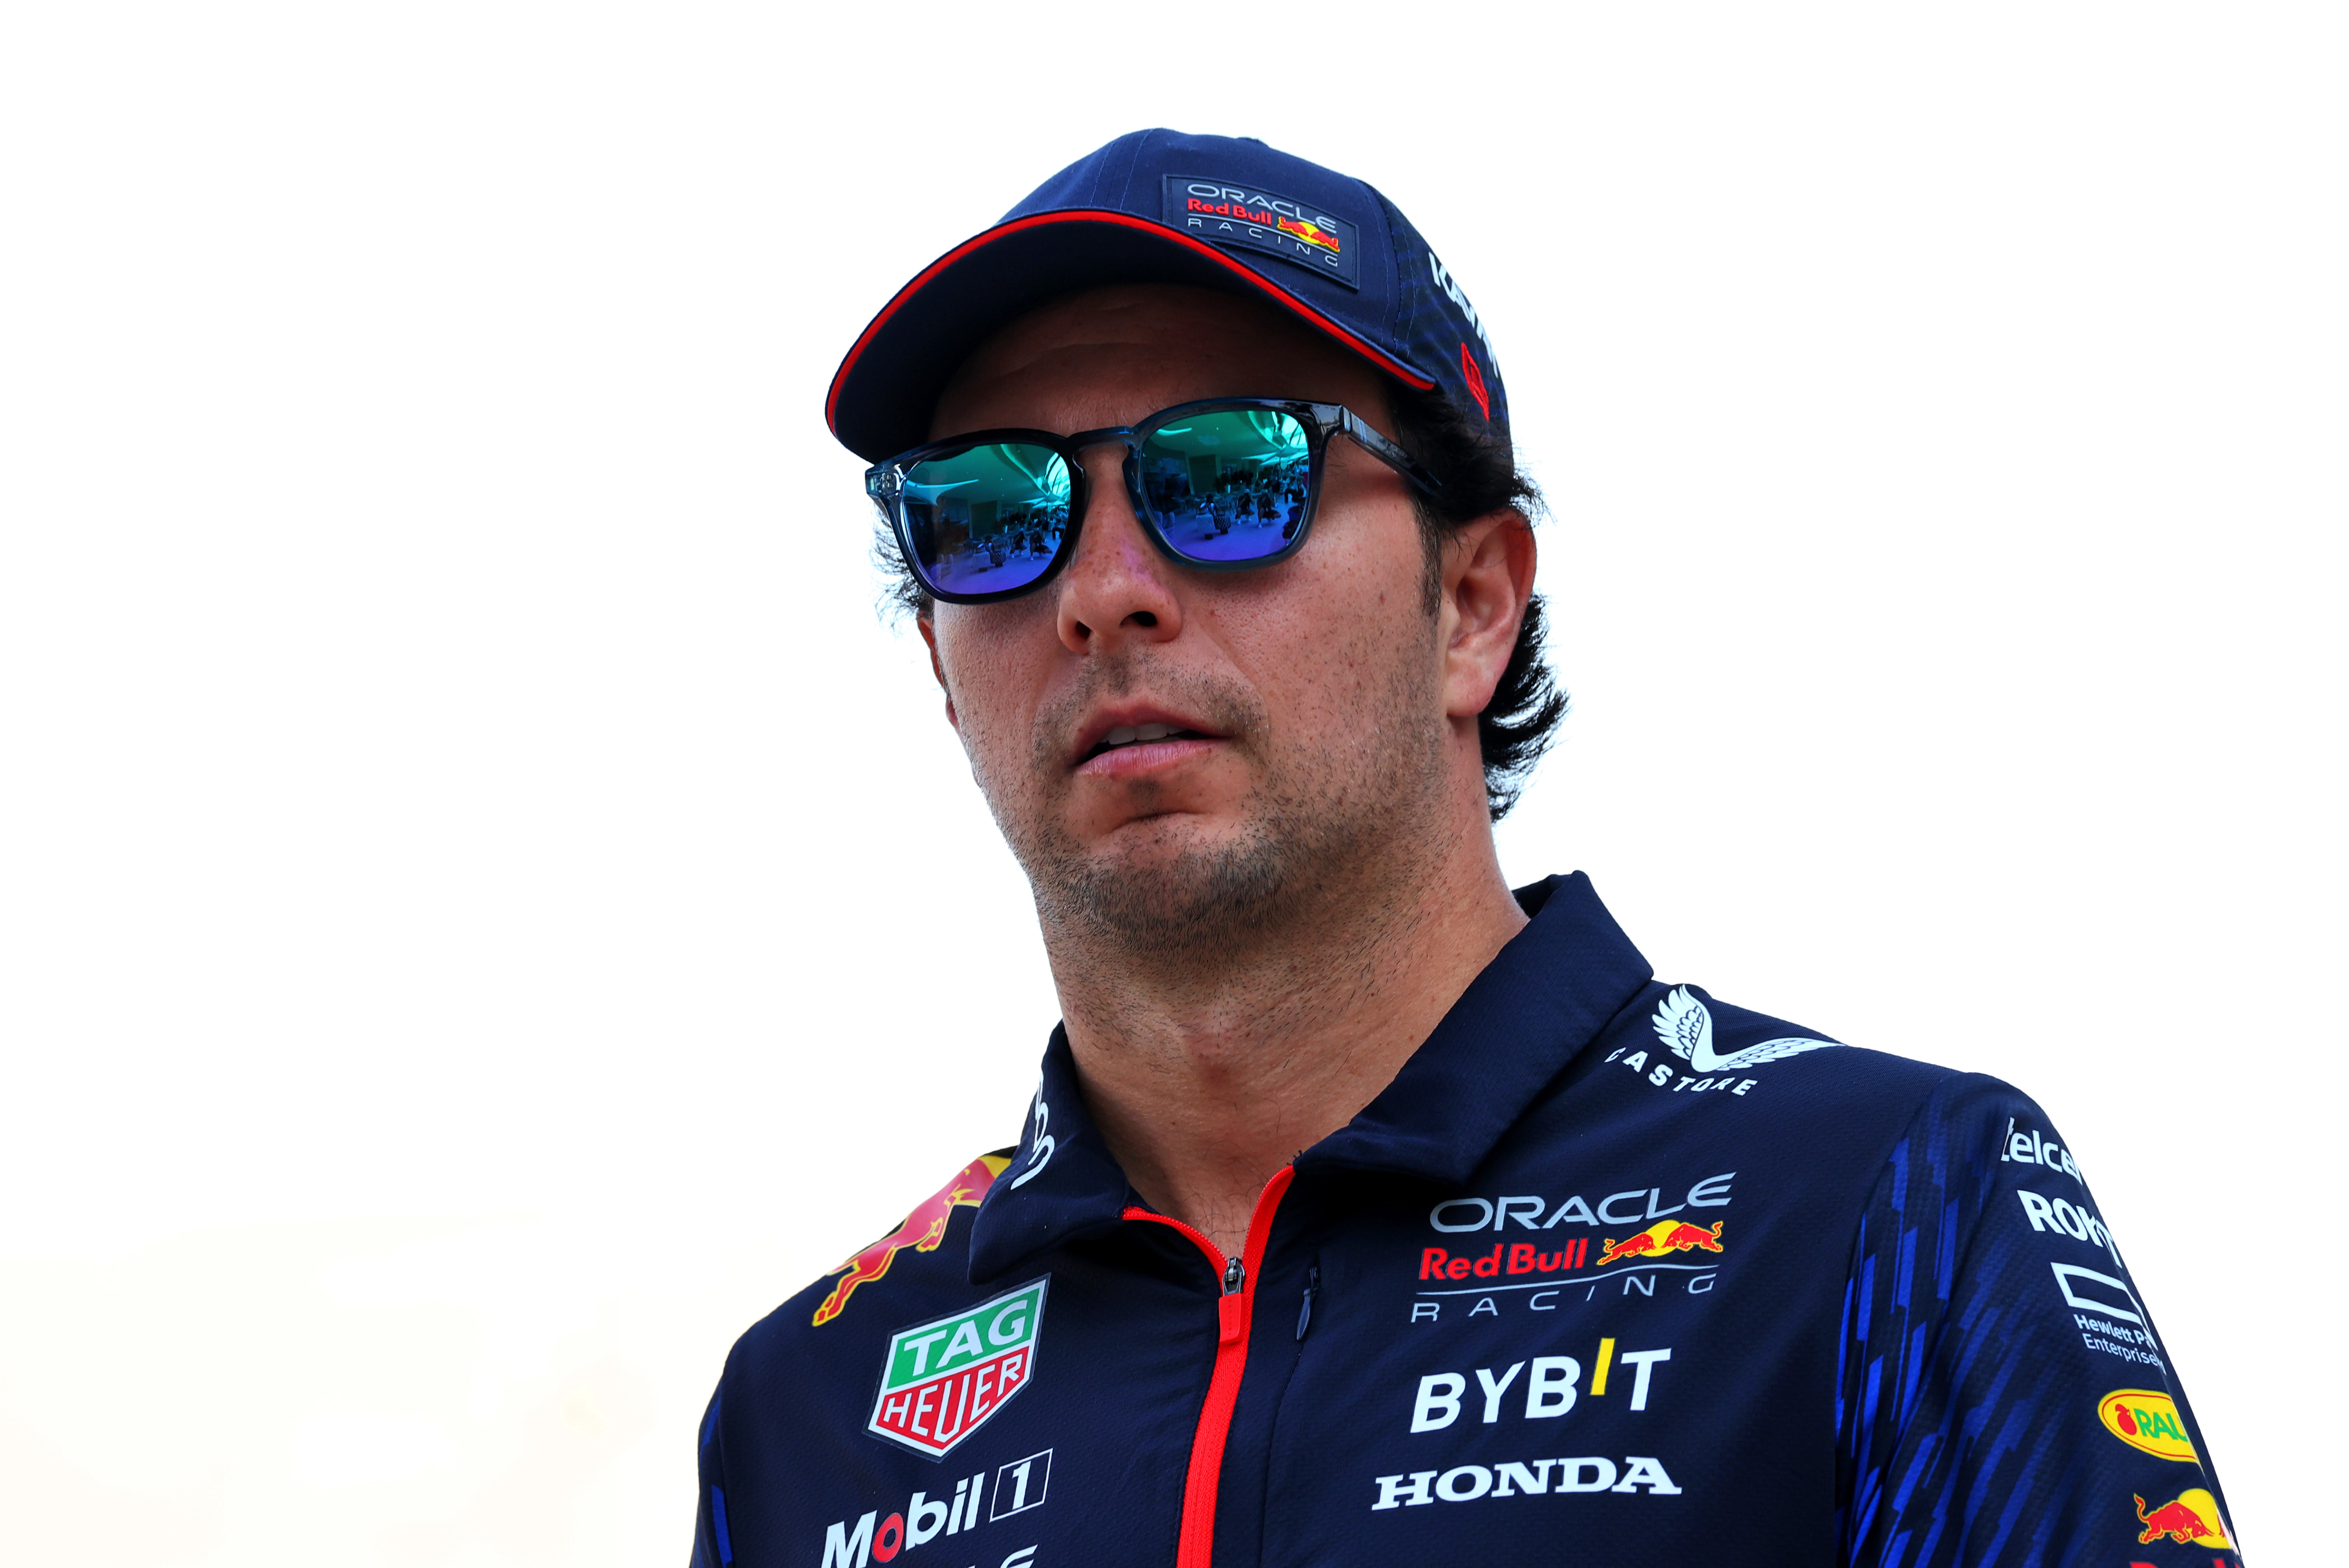 Quién es el dueño de Red Bull Racing? La escudería en la que corre